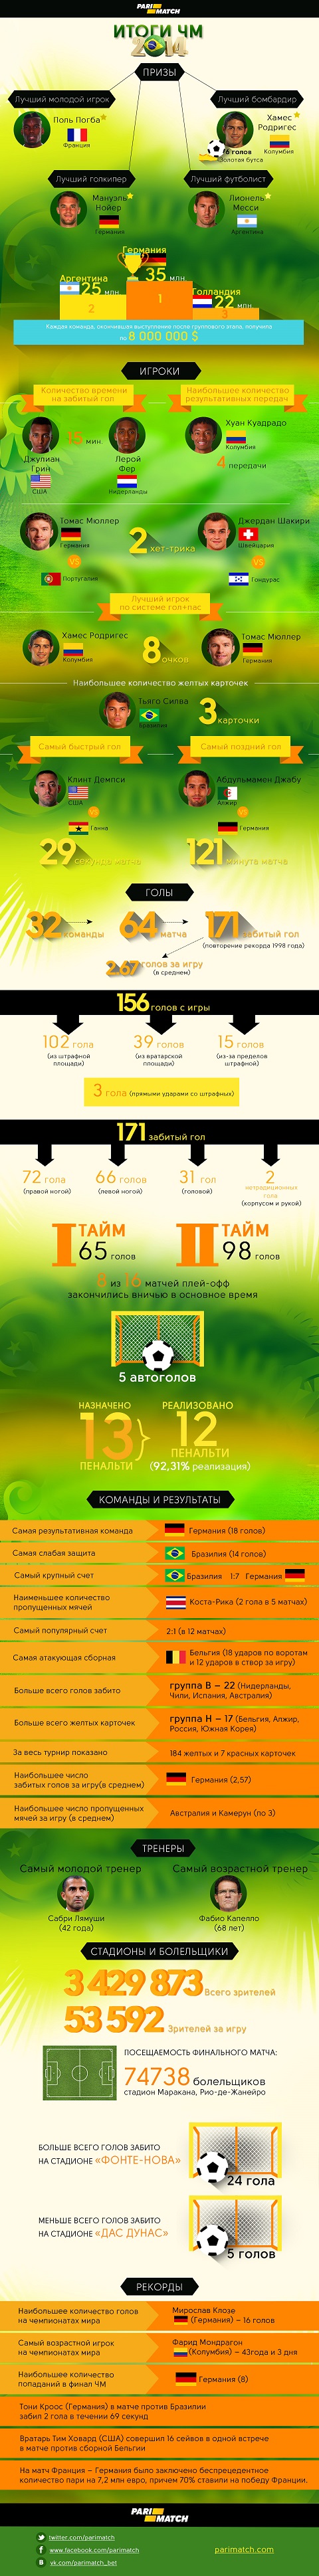 БК Parimatch подготовила подробную инфографику по мотивам ЧМ-2014 -  Чемпионат